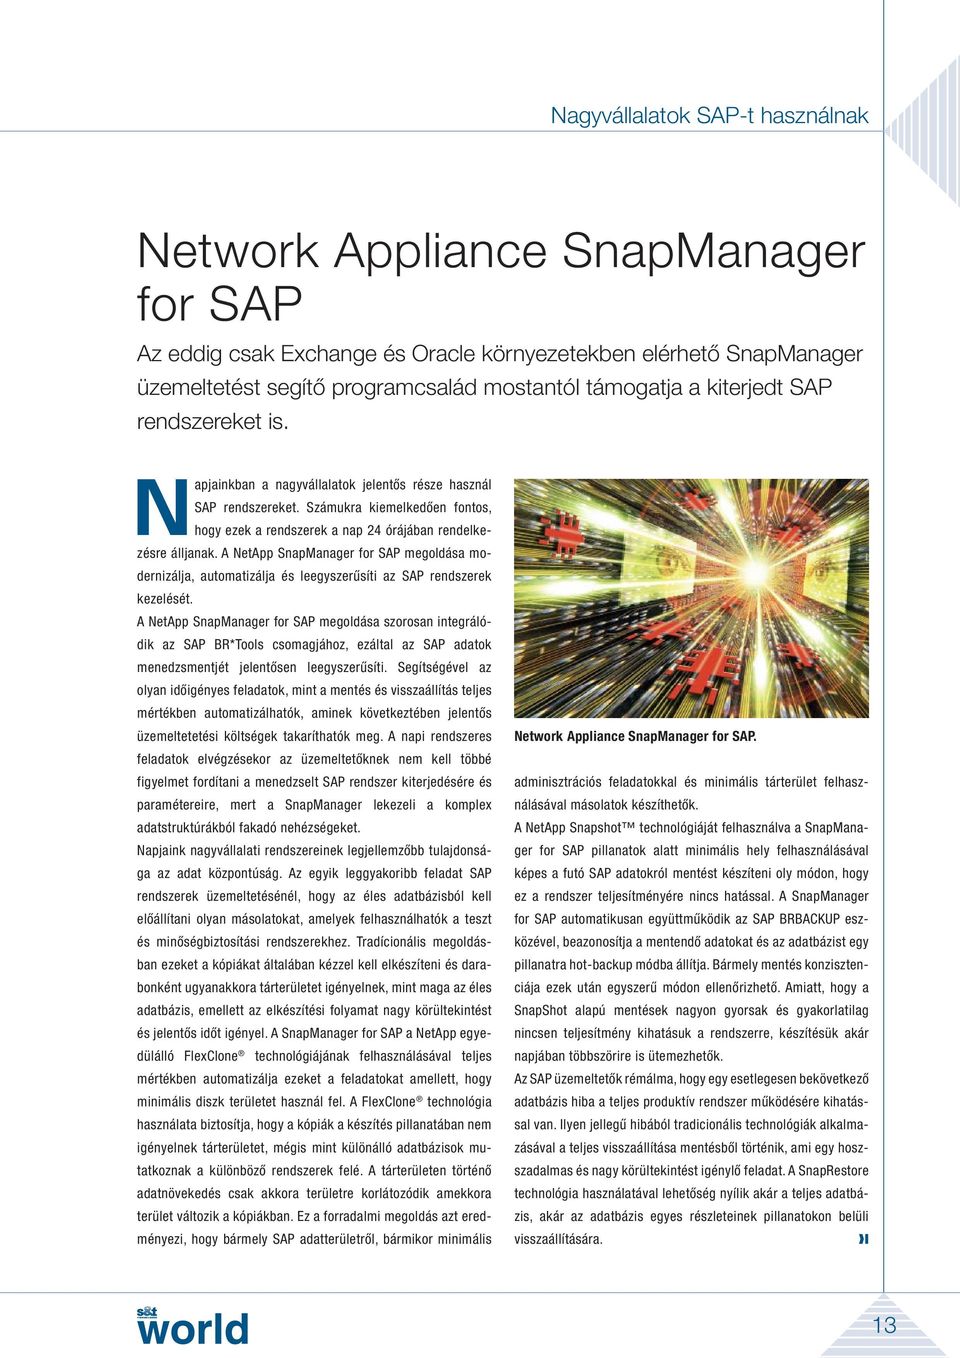 A NetApp SnapManager for SAP megoldása modernizálja, automatizálja és leegyszerűsíti az SAP rendszerek kezelését.